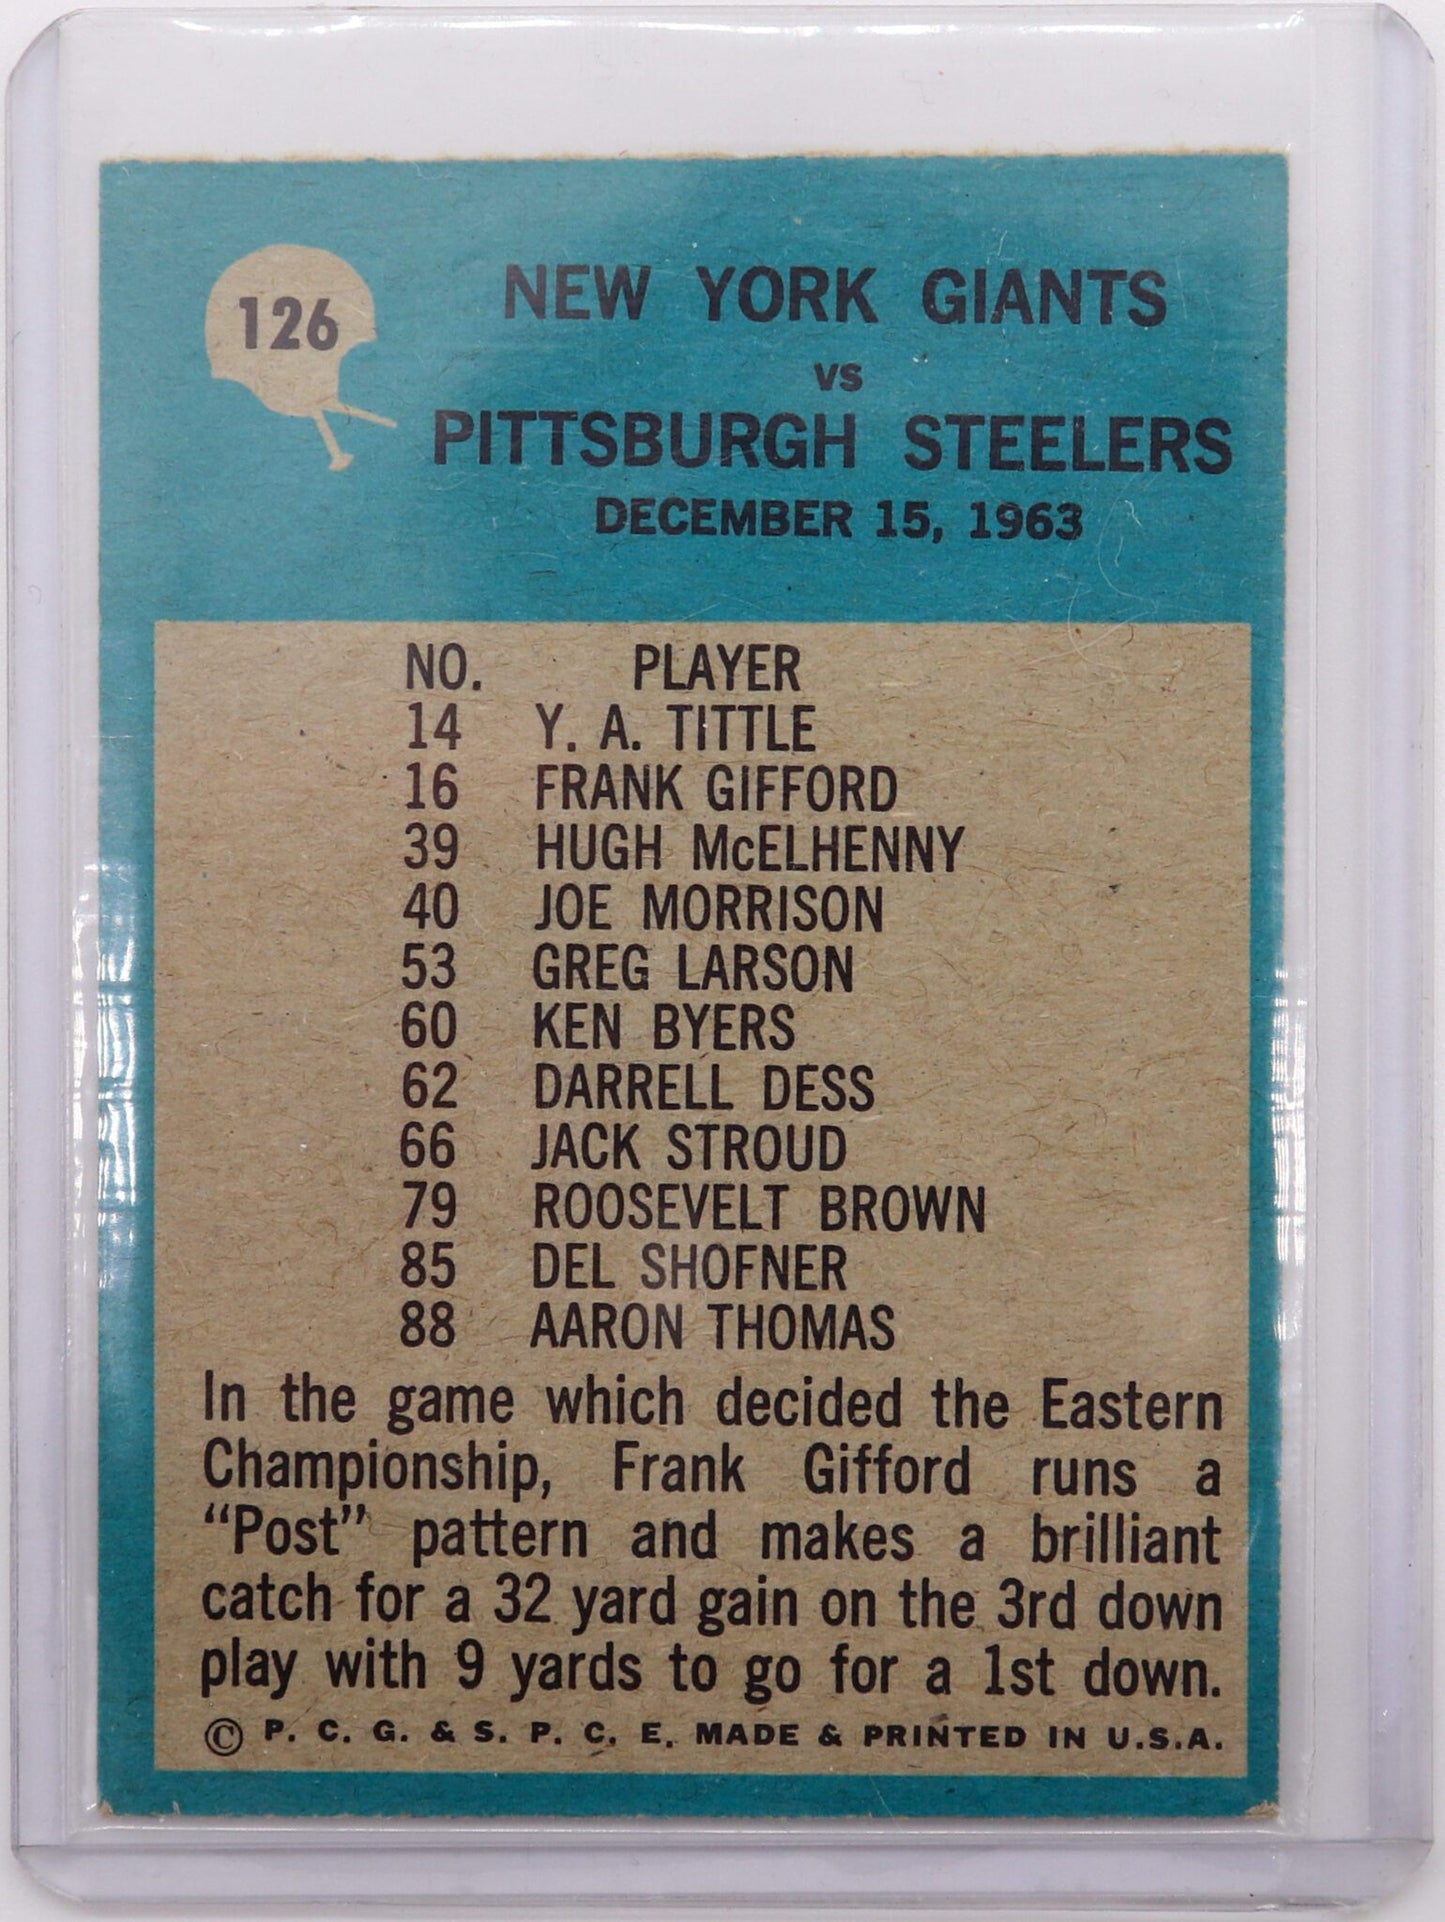 1964 Philadelphia “Giants Play of the Year” Football Card #126, Fair/Good